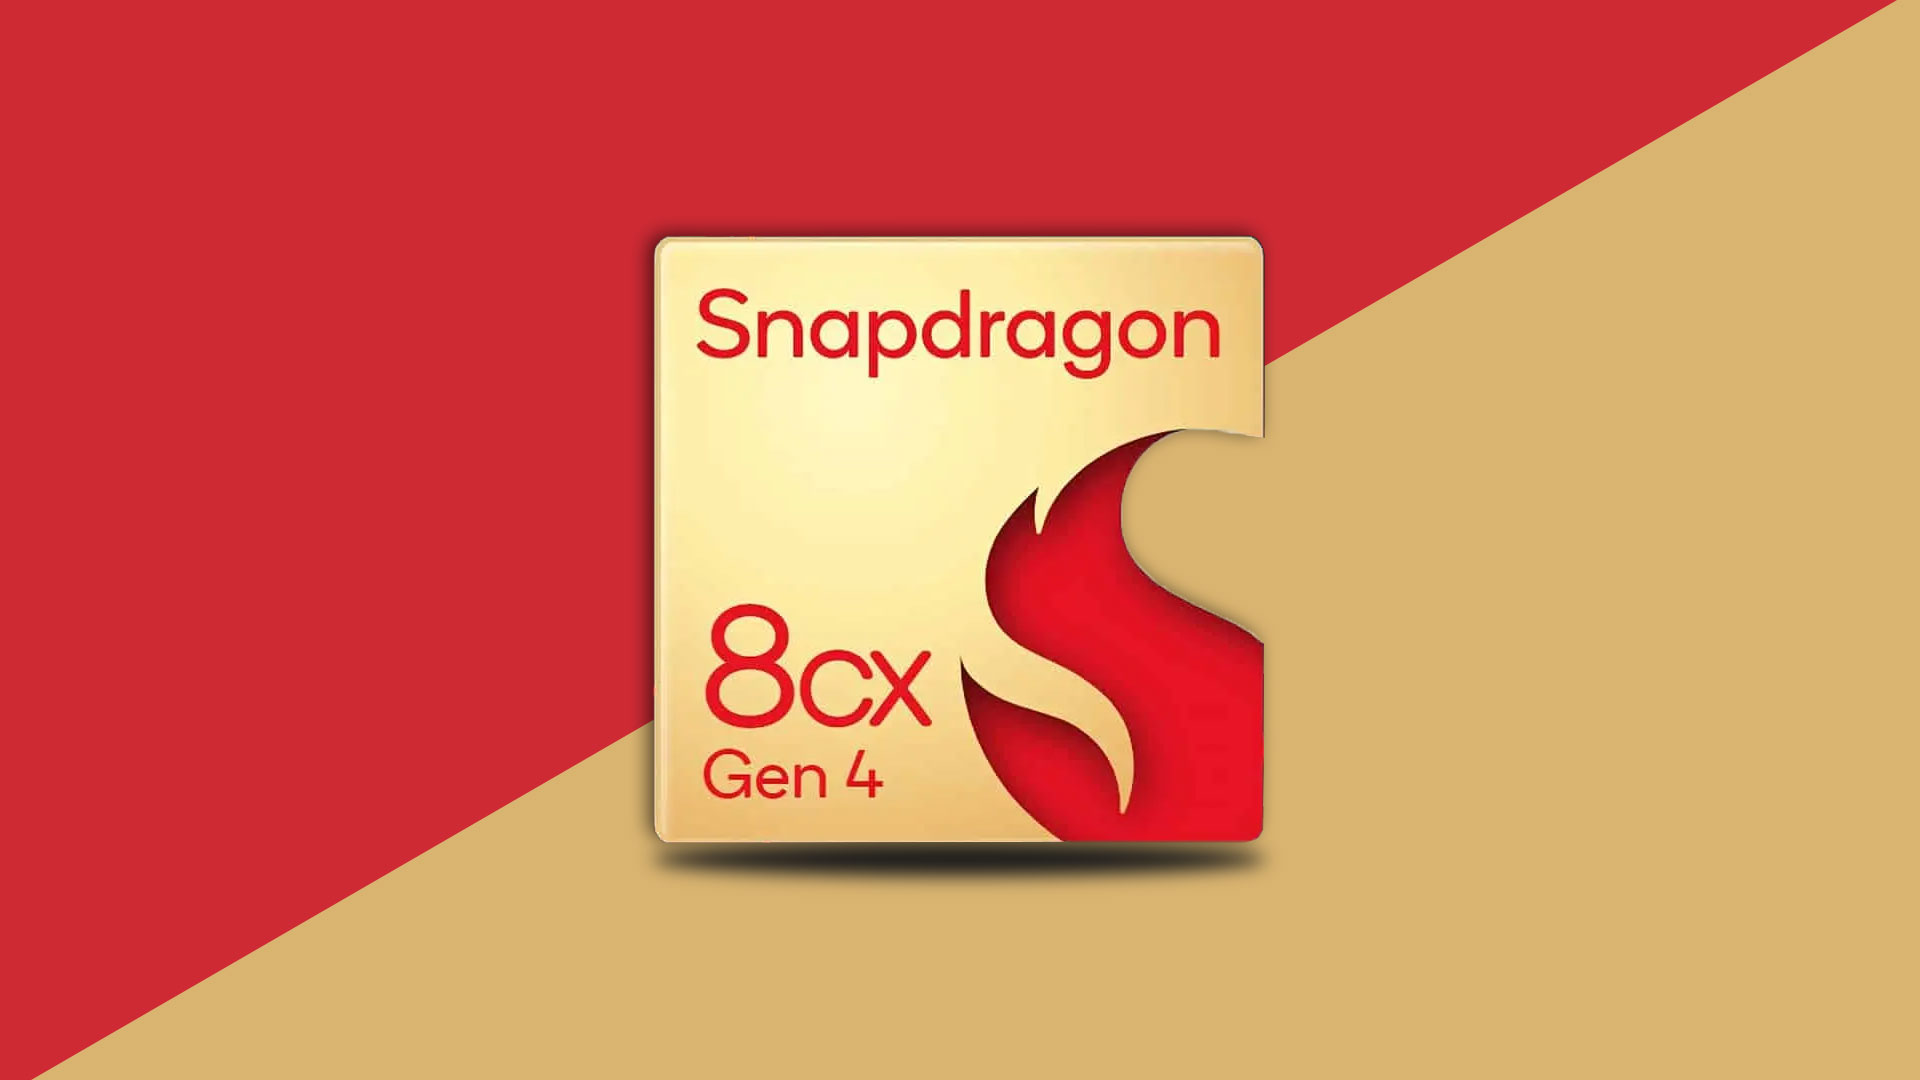 عملکرد Snapdragon 8CX Gen 4